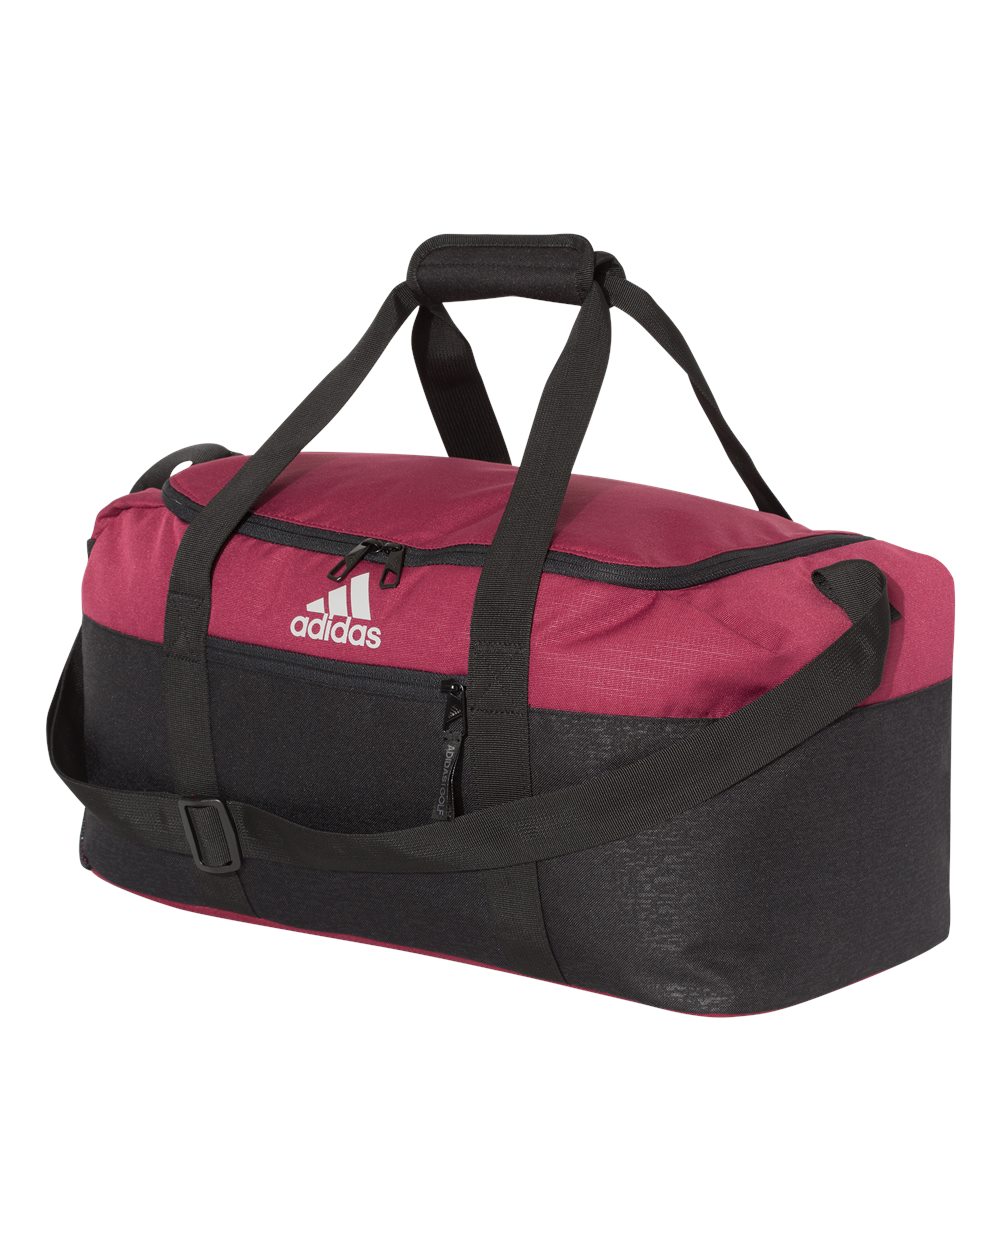 Adidas A311 - 35L Weekend Duffel Bag